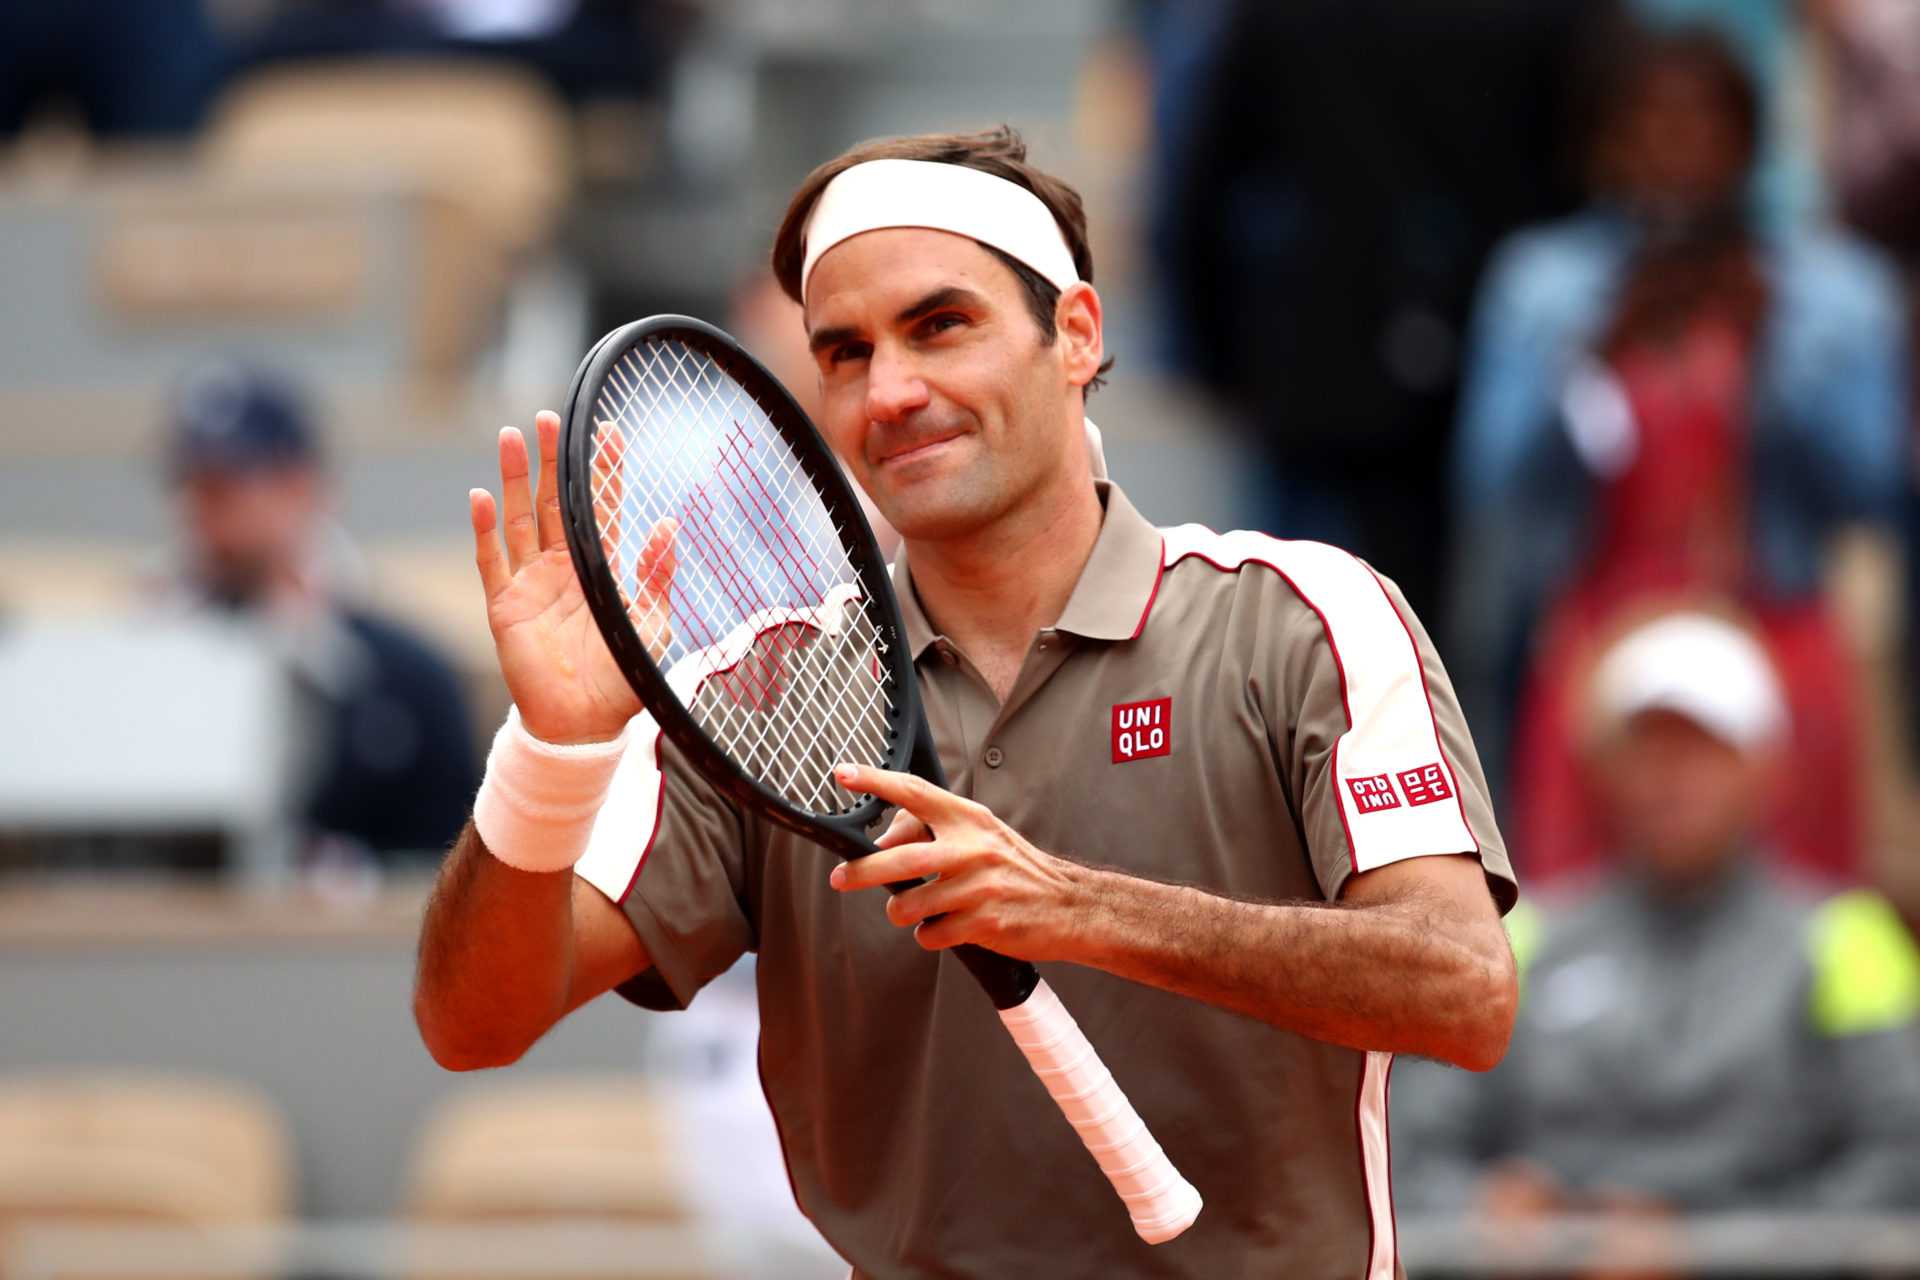 CONFIRMÉ: Roger Federer reviendra sur terre battue après des matches de retour imposants à Doha